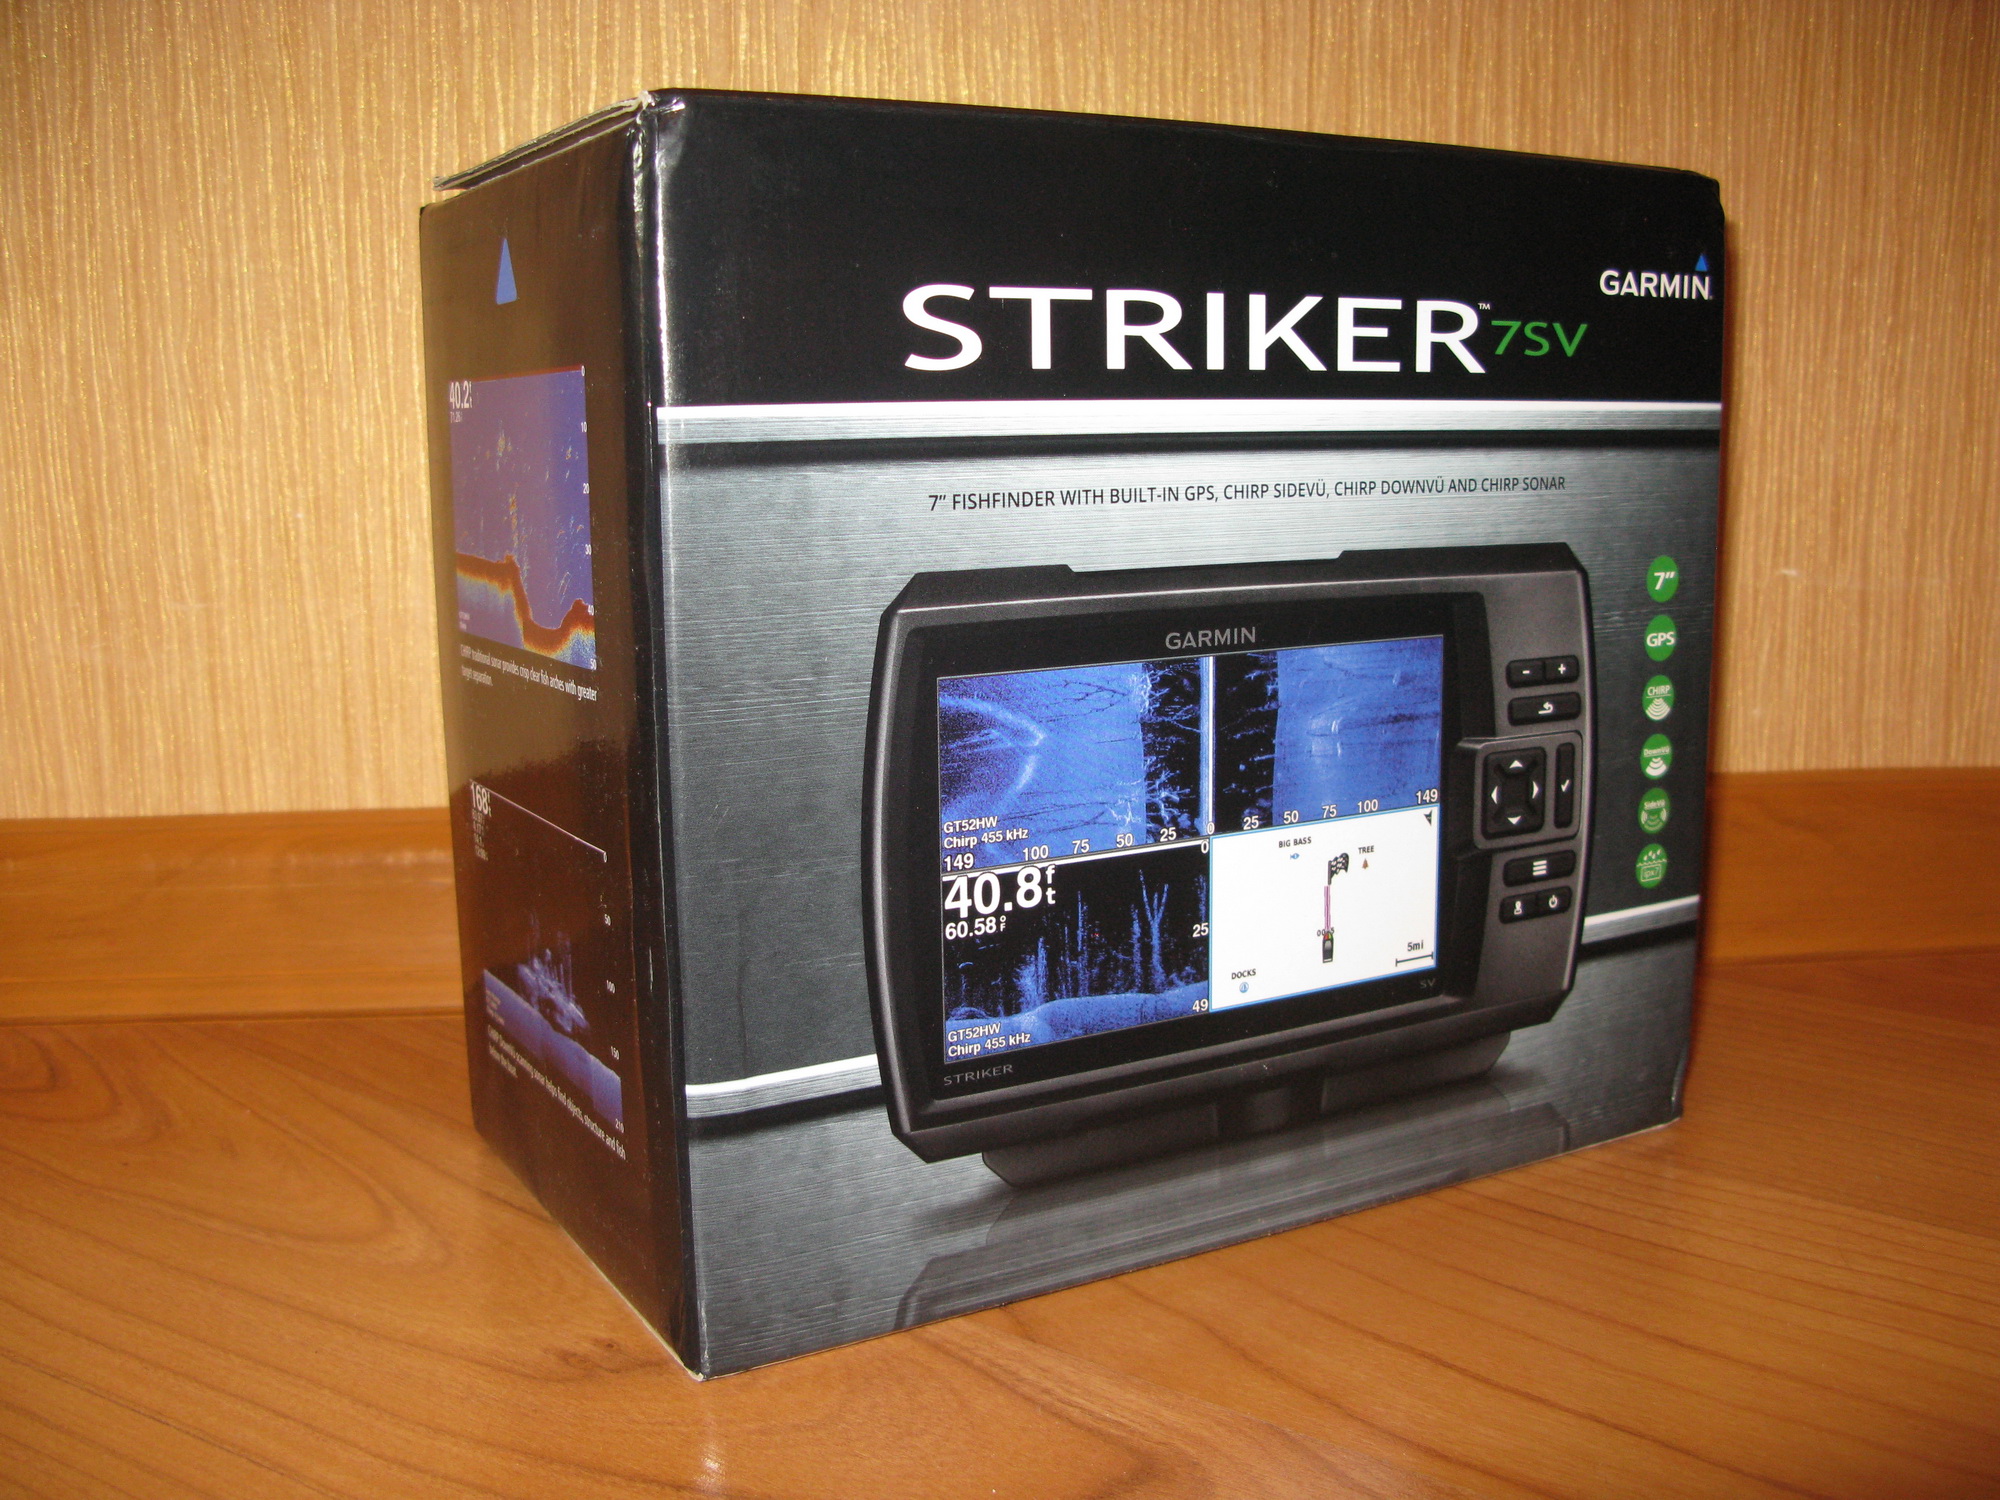 Гармин страйкер св. Гармин Страйкер 7св. Garmin Striker Plus SV 7 коробка. Гармин Страйкер вивид 7sv коробка. Гармин Страйкер 7sv размер упаковки.